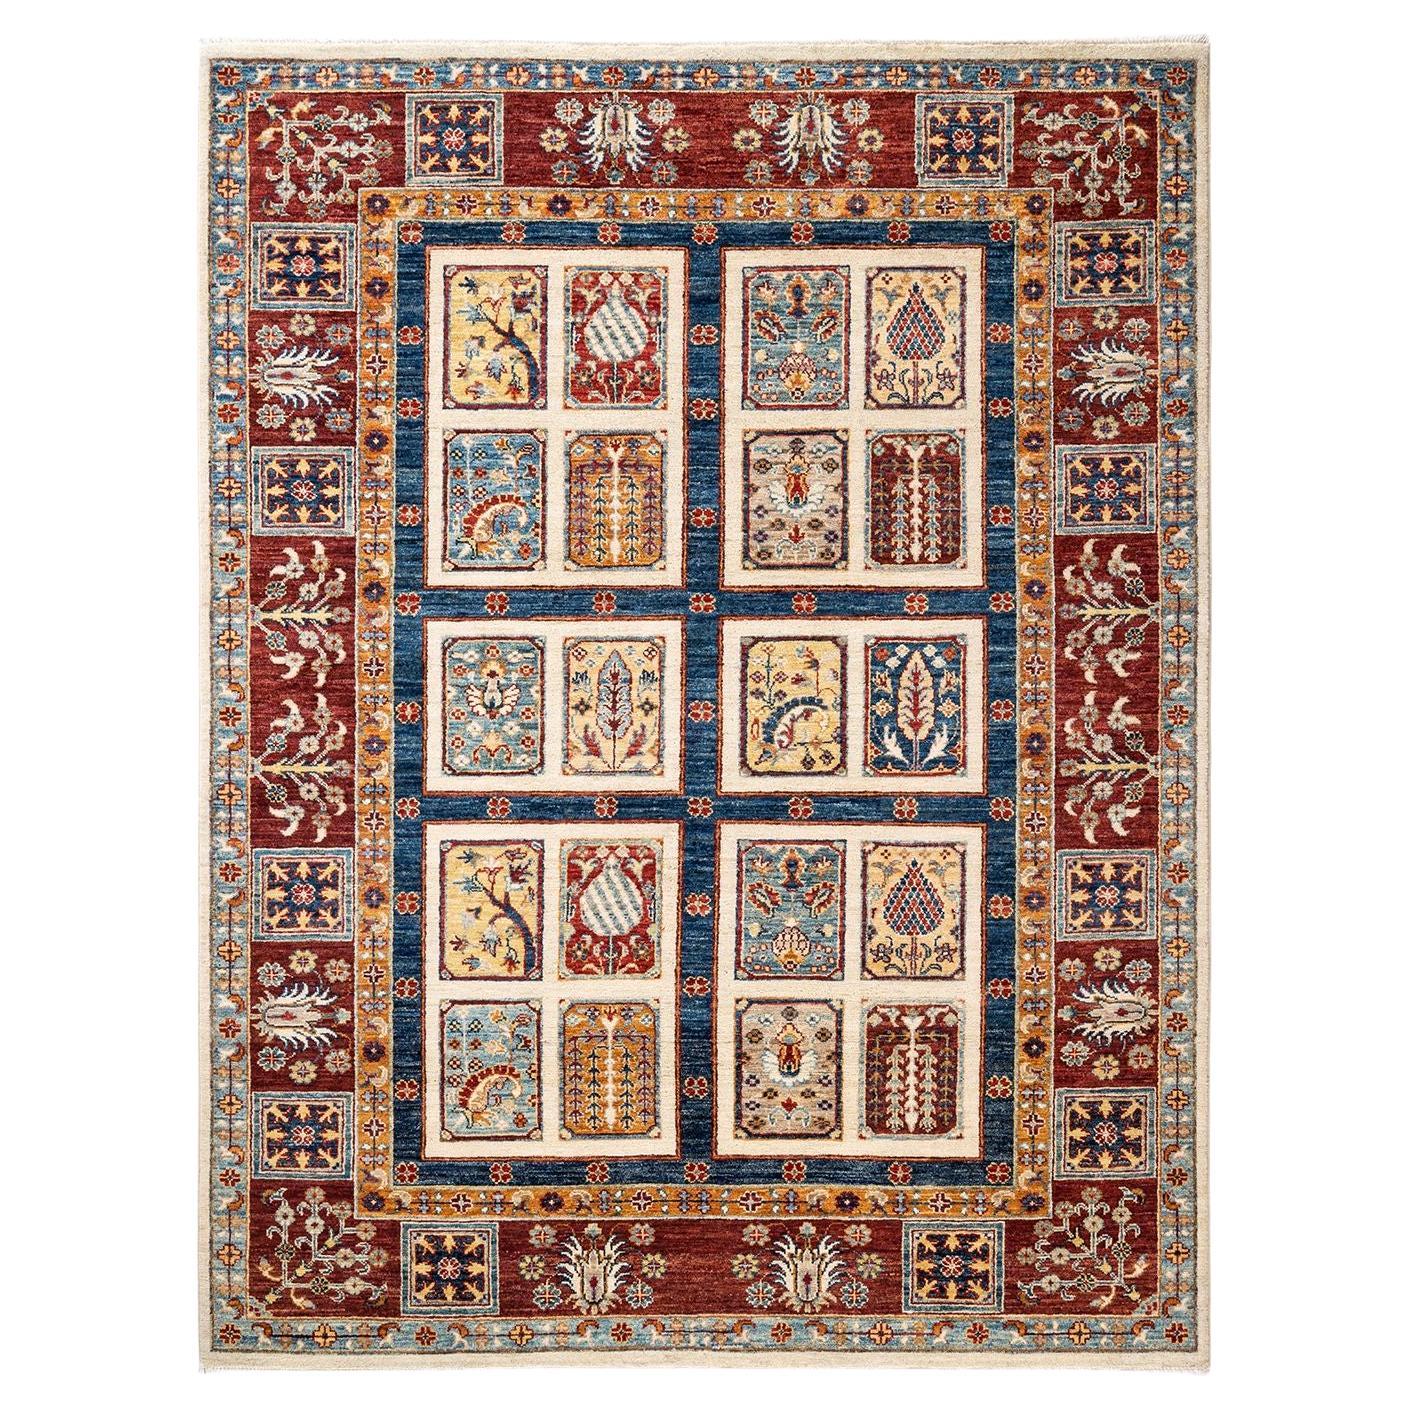 Handgeknüpfter Stammes-Teppich, ein Unikat  Elfenbeinfarben, 4' 11" x 6' 6"